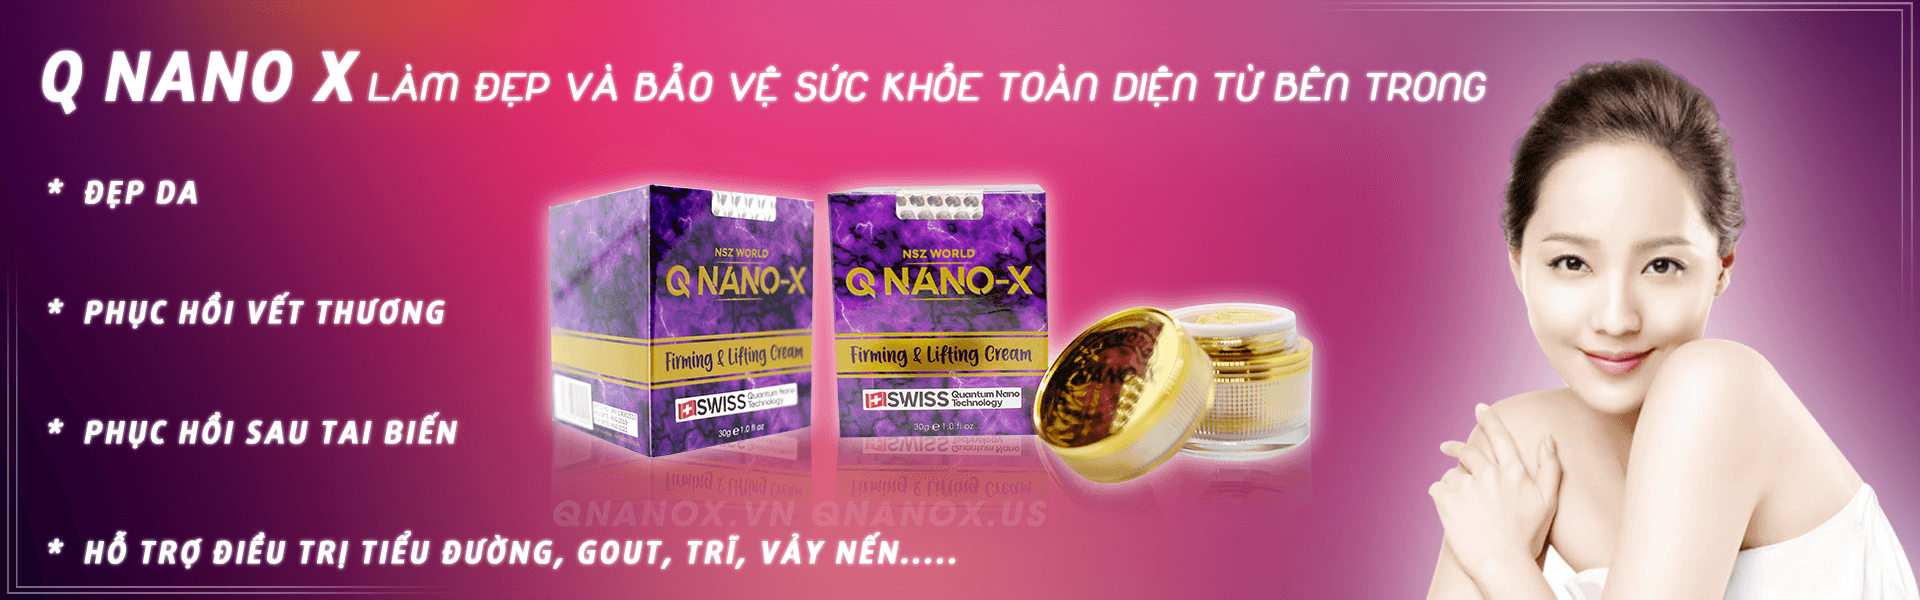 Q NANO X kem trị liệu và làm đẹp